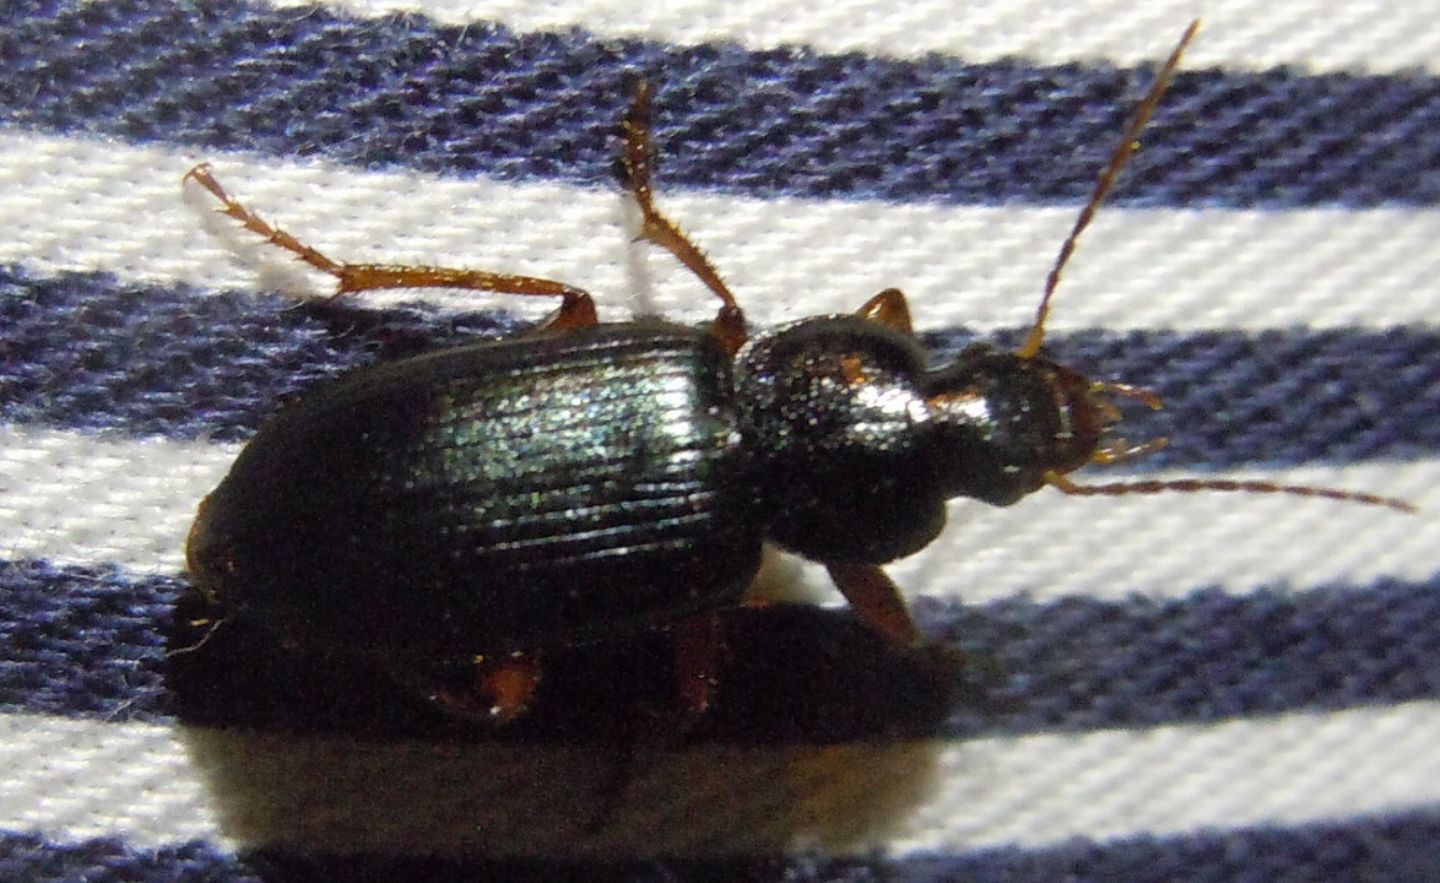 Ophonus ardosiacus  e Pseudoophonus rufipes  (Carabidae)